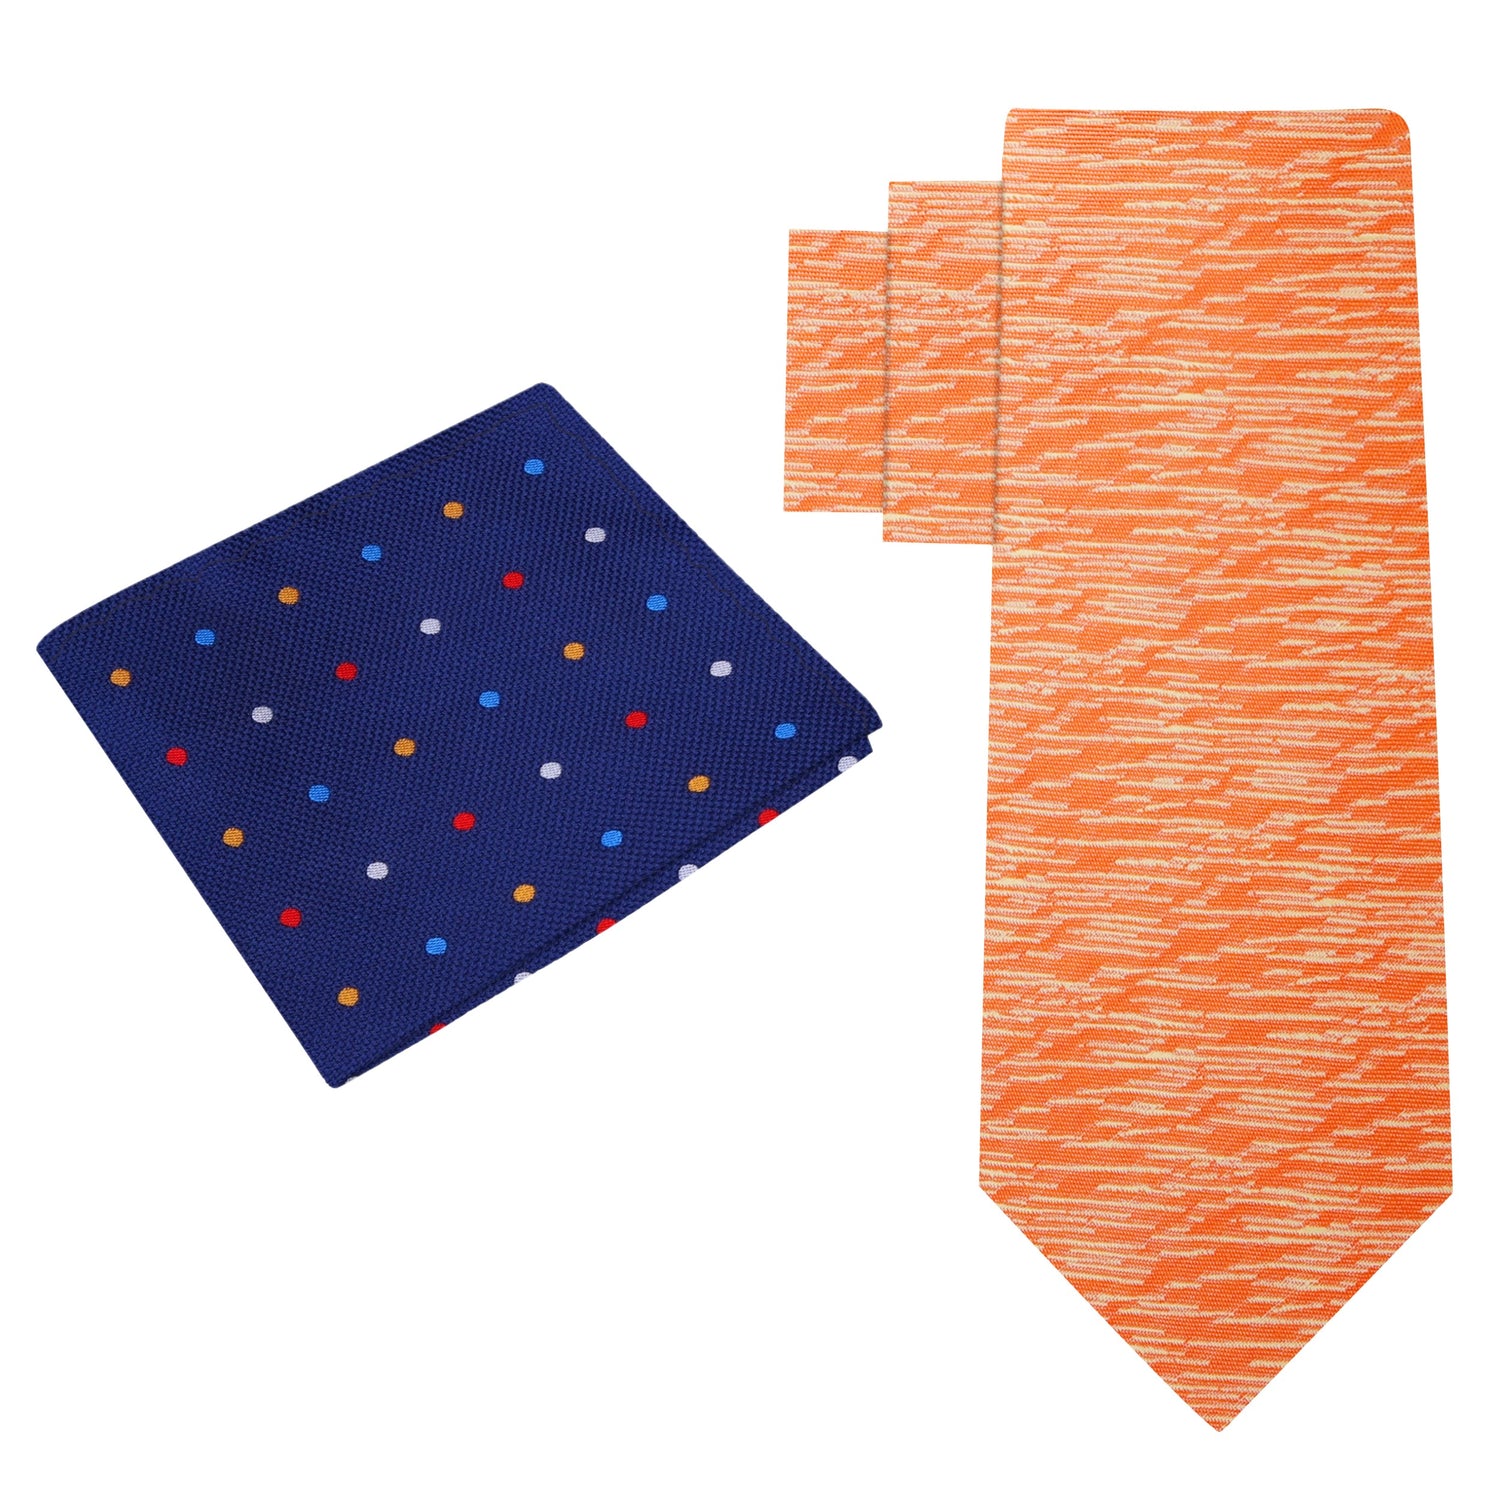 Alt View: Orange Necktie with Blue Polka Square